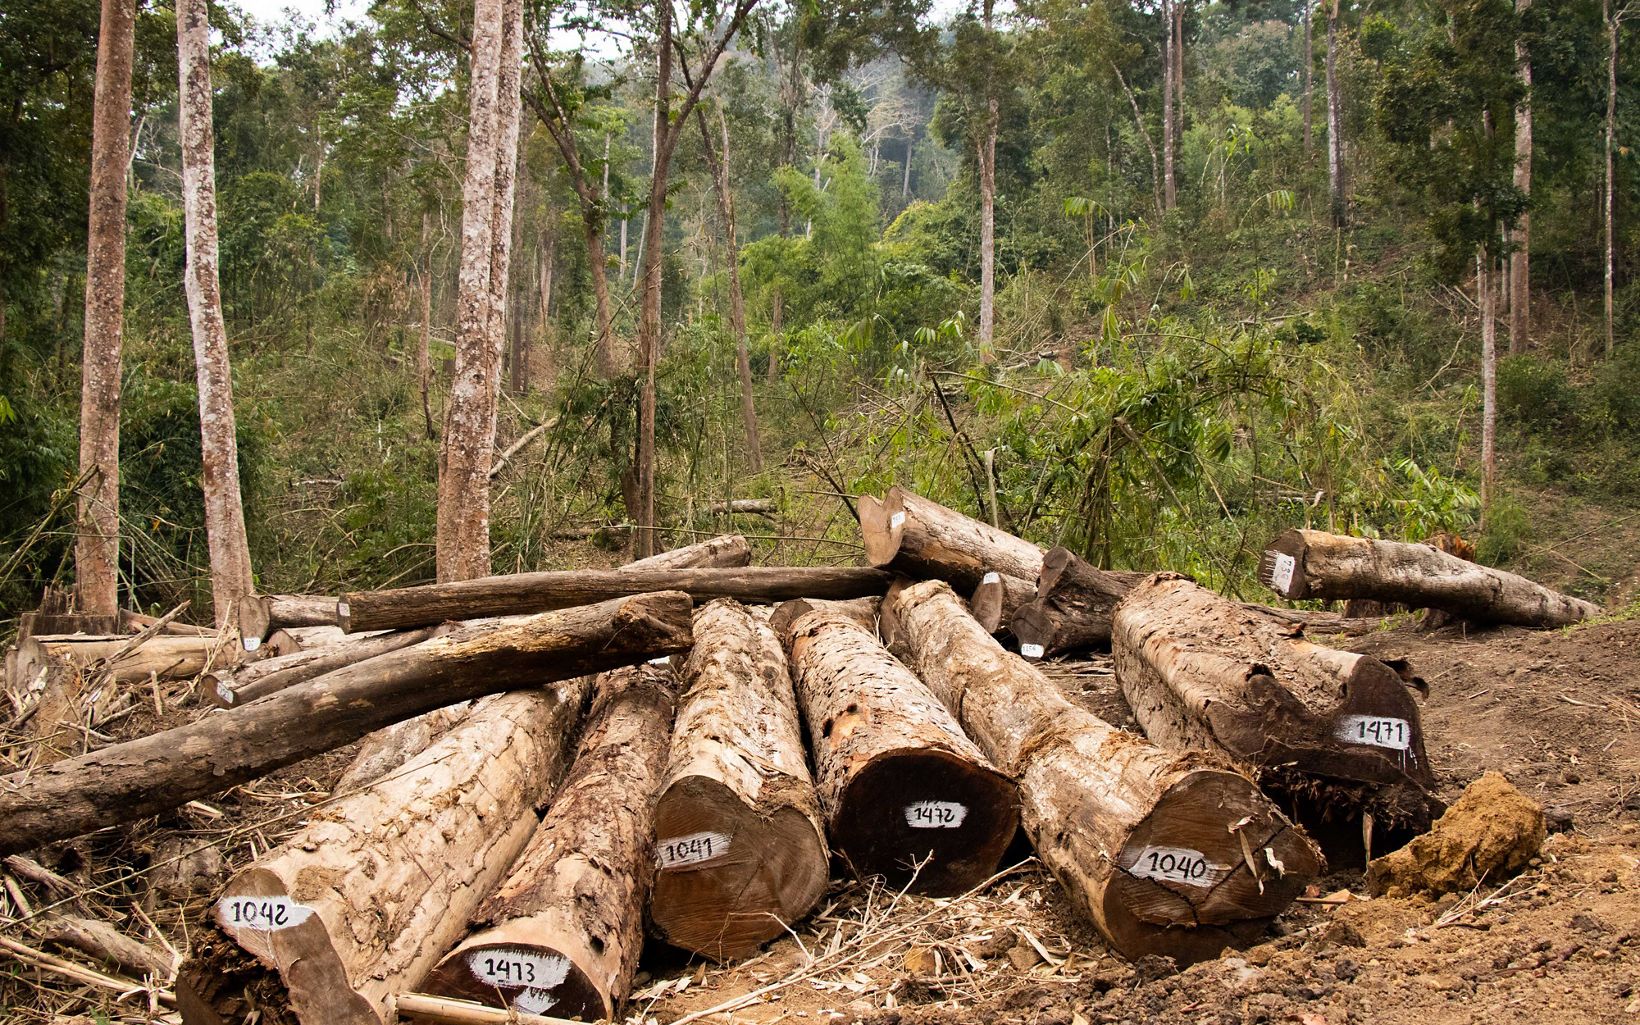 
                
                  約70％的緬甸居民生活在農村地區 他們的基本生活依賴森林
                  © Justine Hausheer/TNC
                
              